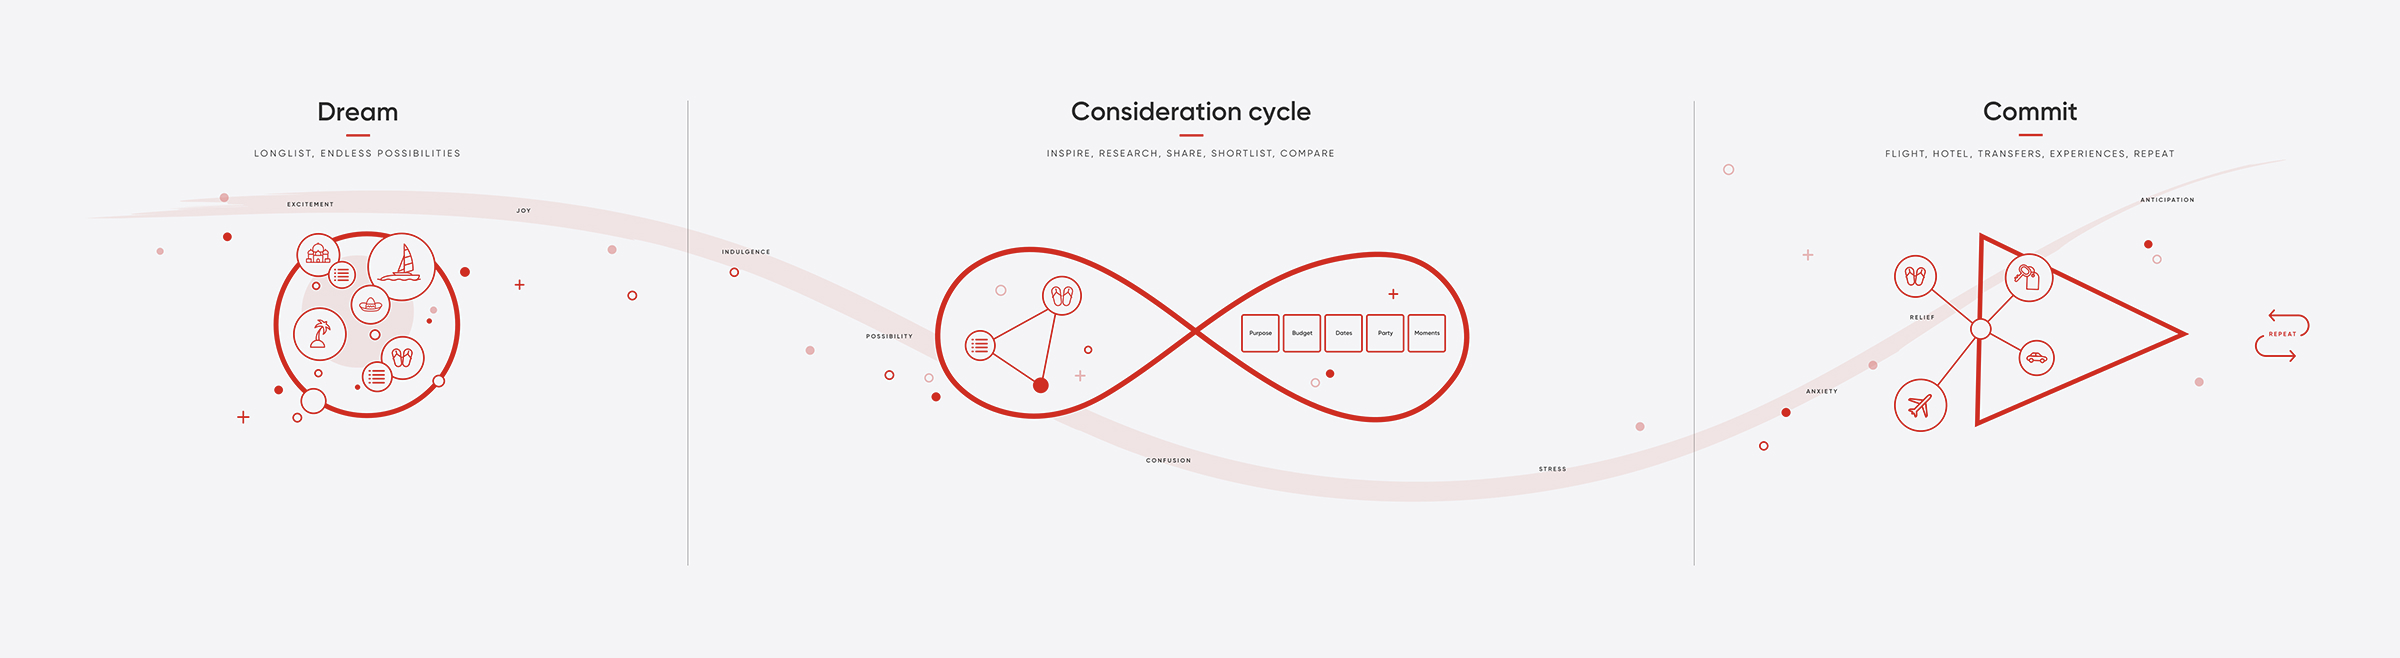 Consideration cycle visual